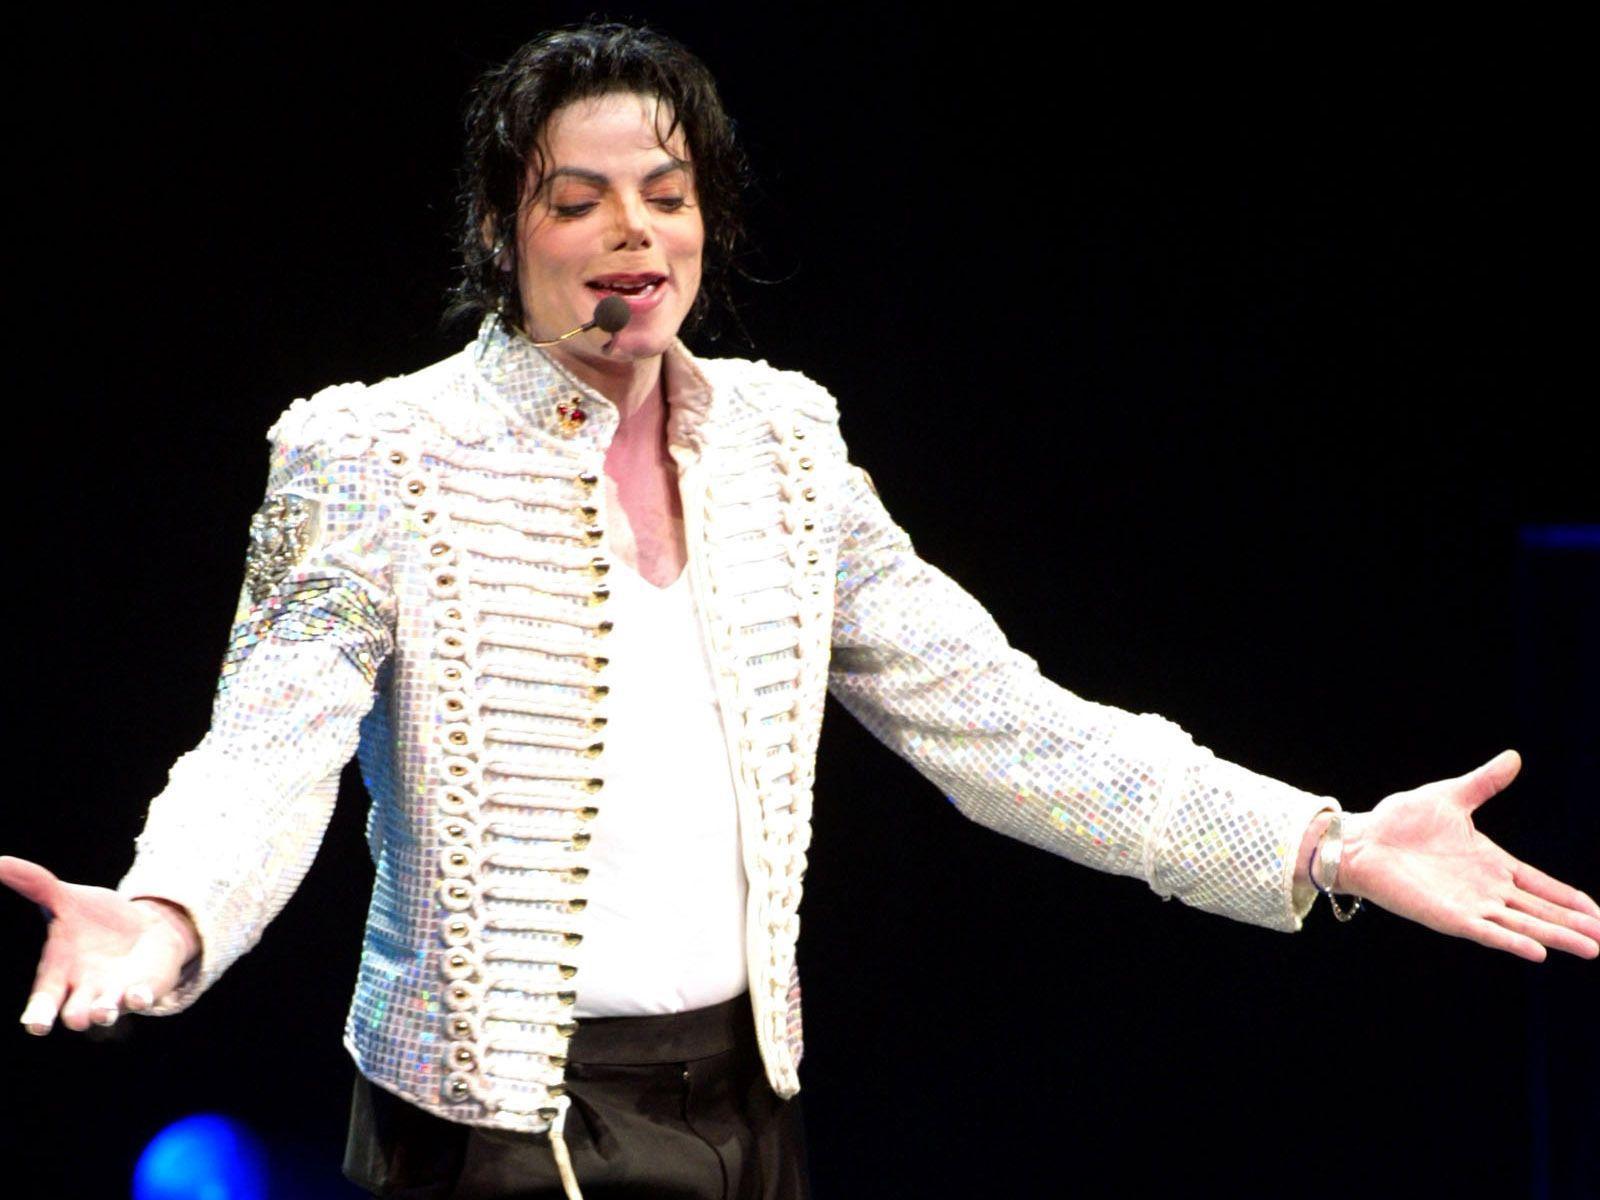 Michael Jackson HD Image 8. Michael Jackson HD Image